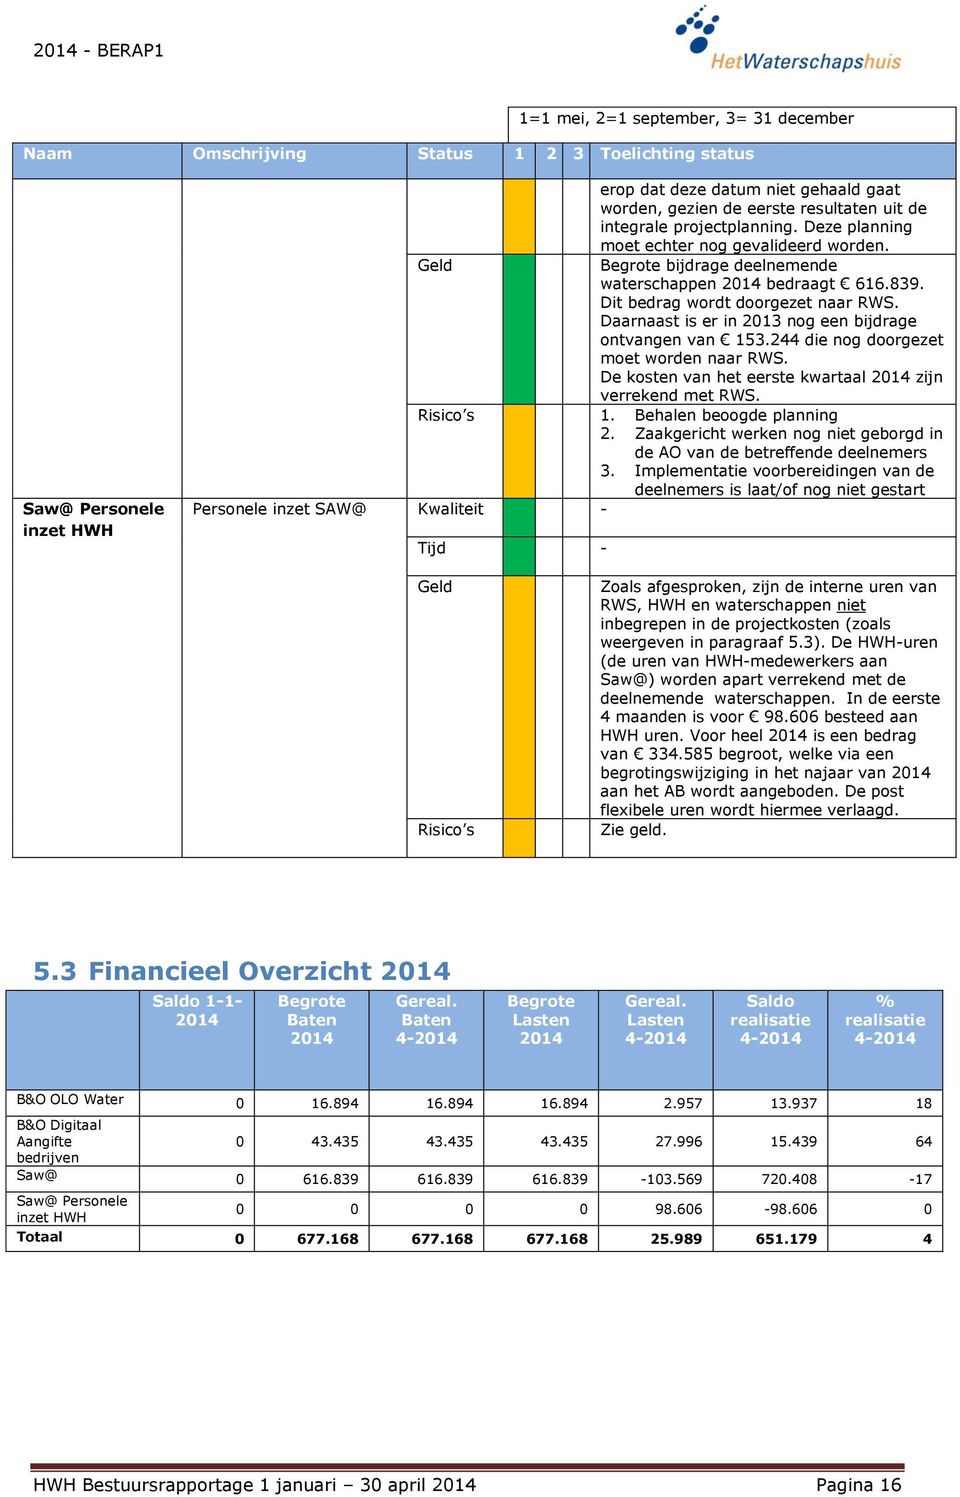 Daarnaast is er in 2013 nog een bijdrage ontvangen van 153.244 die nog doorgezet moet worden naar RWS. De kosten van het eerste kwartaal zijn verrekend met RWS. 1. Behalen beoogde planning 2.